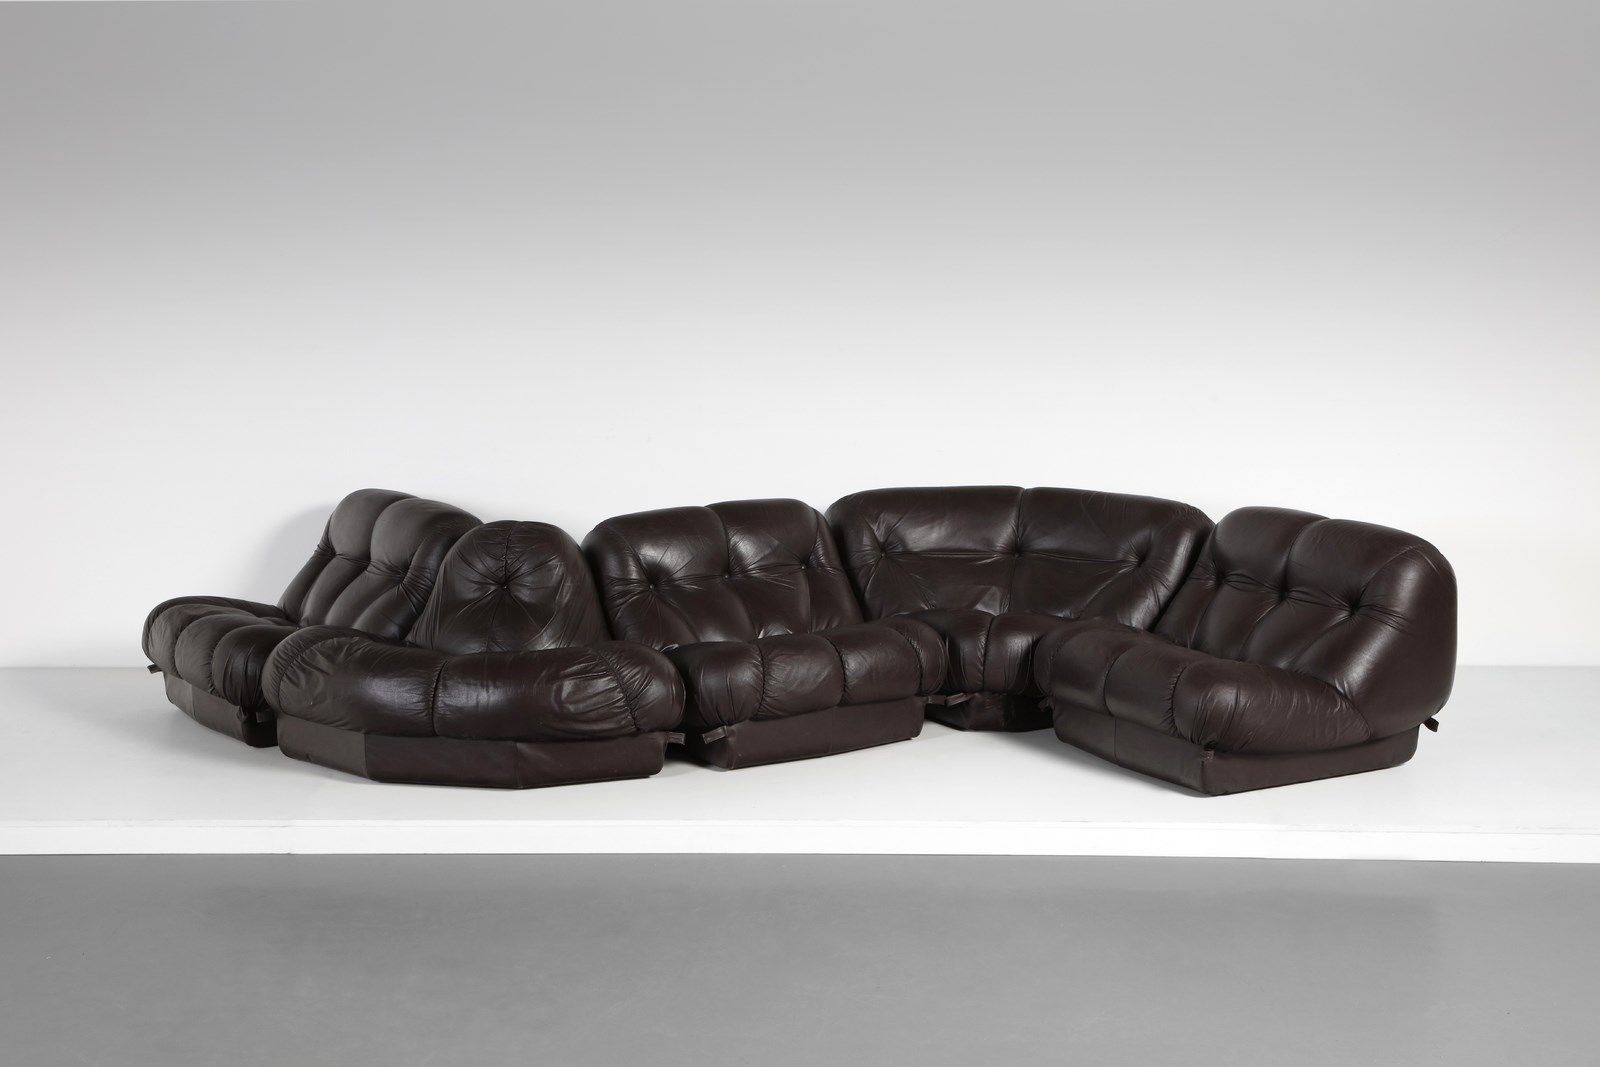 MATURI RIMO MIMO公司生产的RIMO Nuvolone沙发。塑料材料和软垫皮革。Cm 460.00 x 70.00 x 190.00。1970年代&hellip;